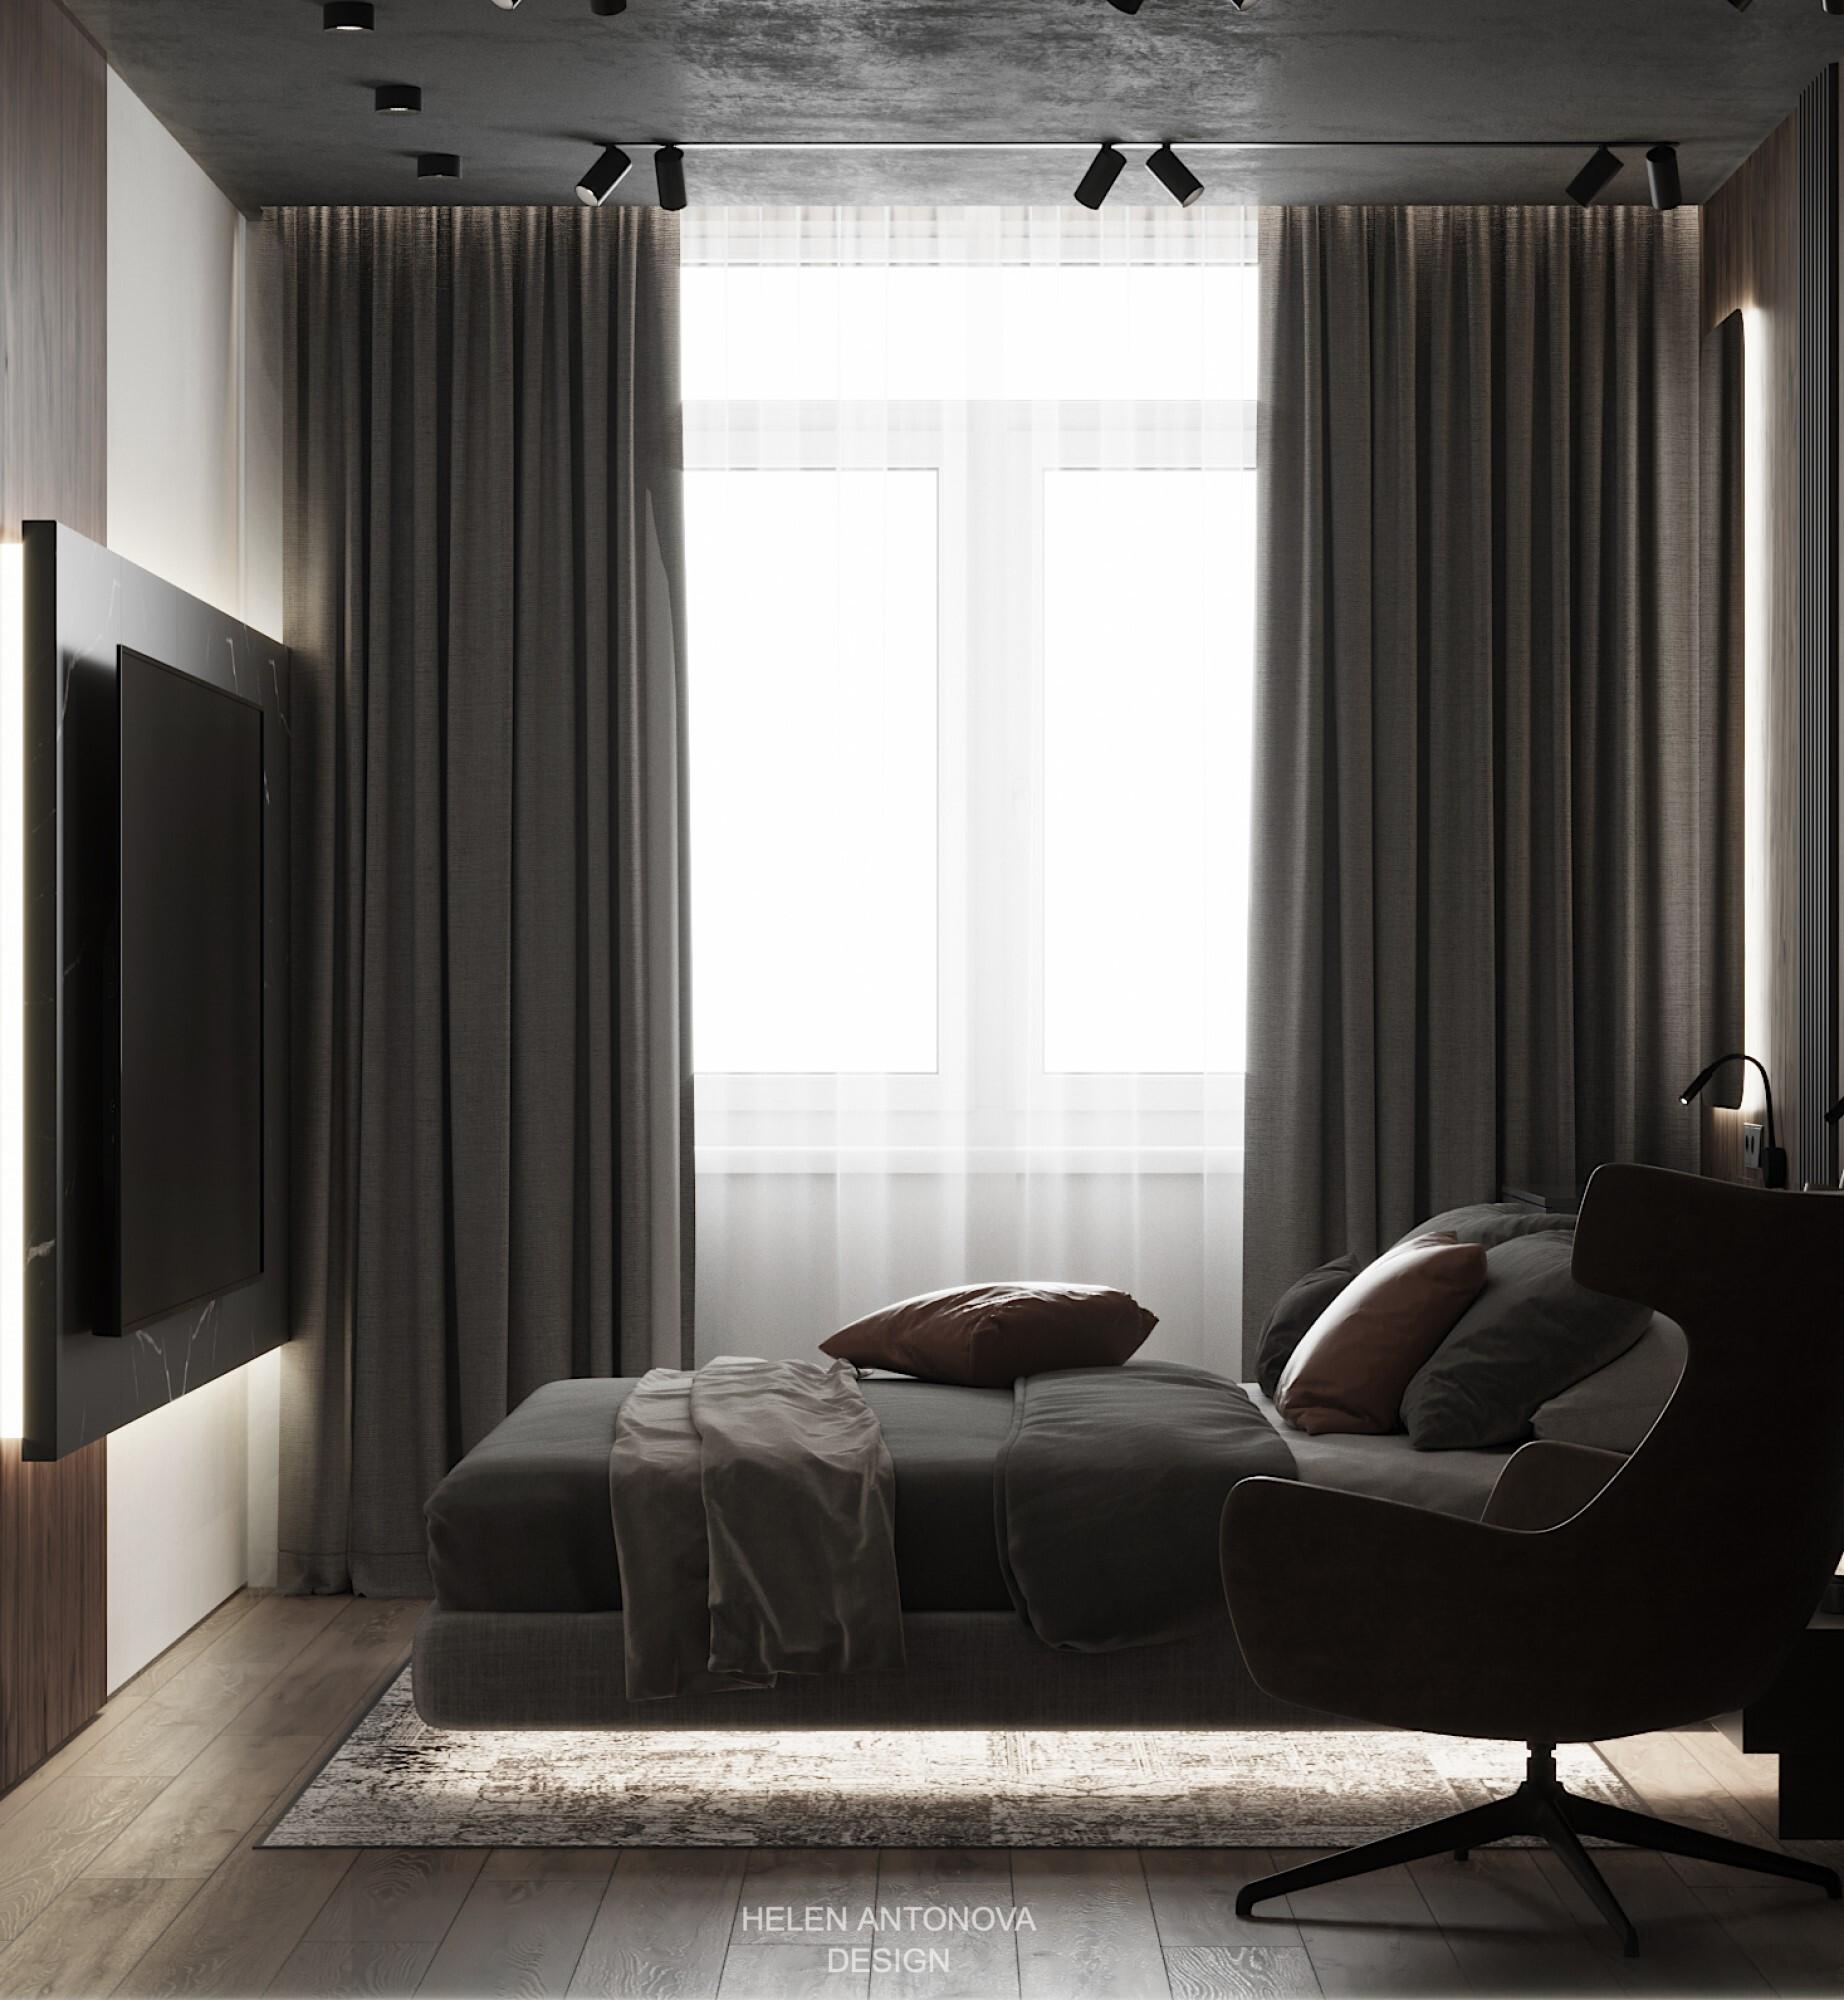 Интерьер гостиной с зонированием шторами и светильниками над кроватью в стиле лофт и готике